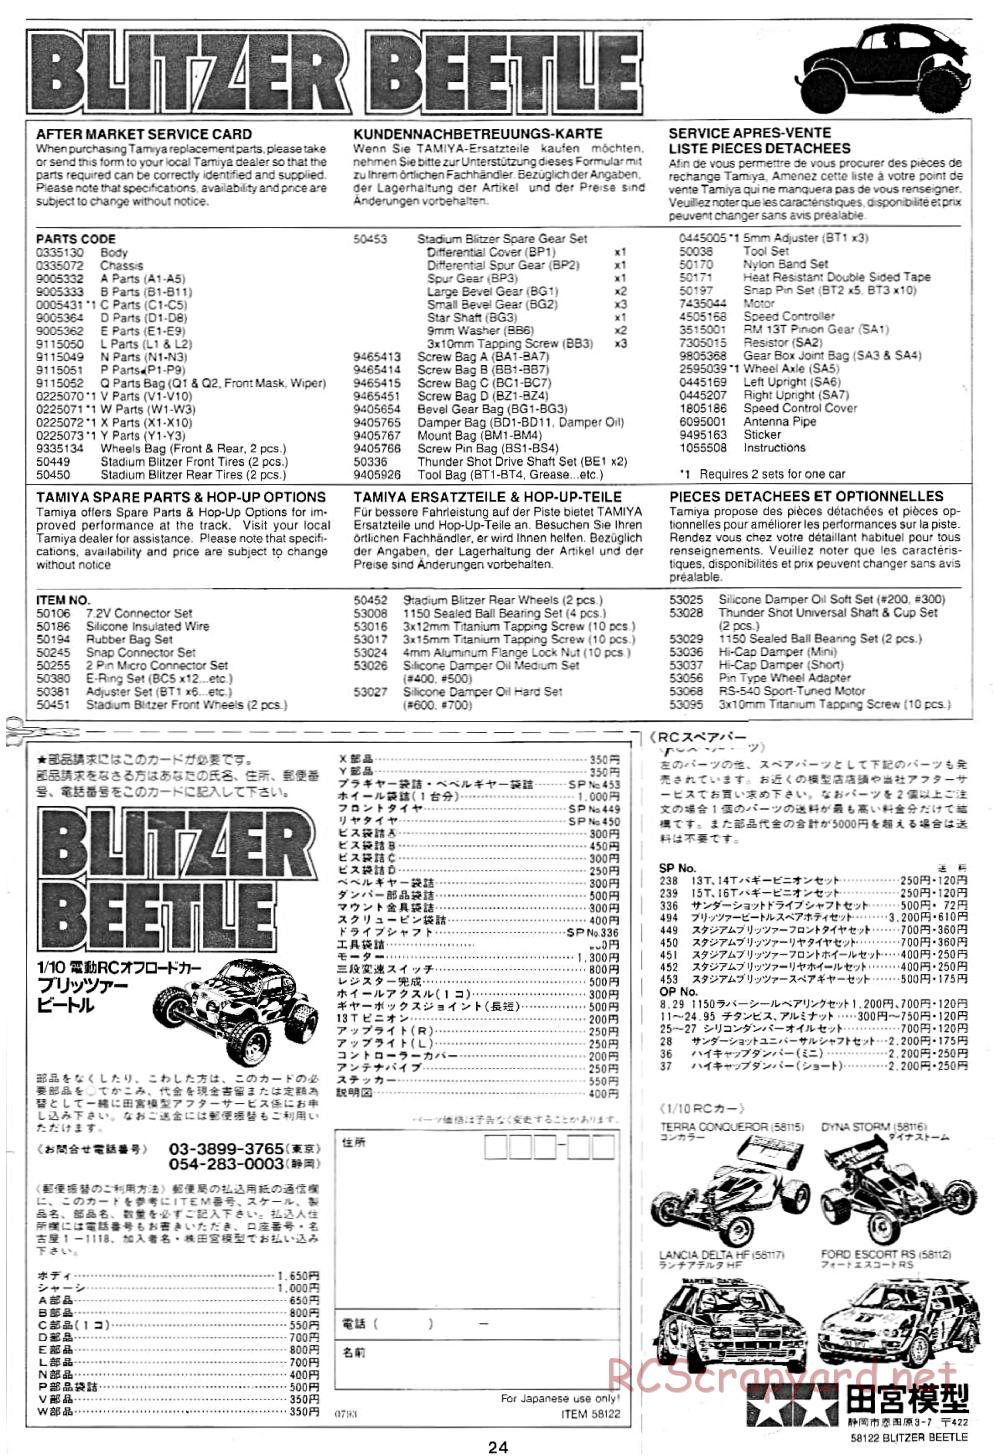 Tamiya - Blitzer Beetle Chassis - Manual - Page 24